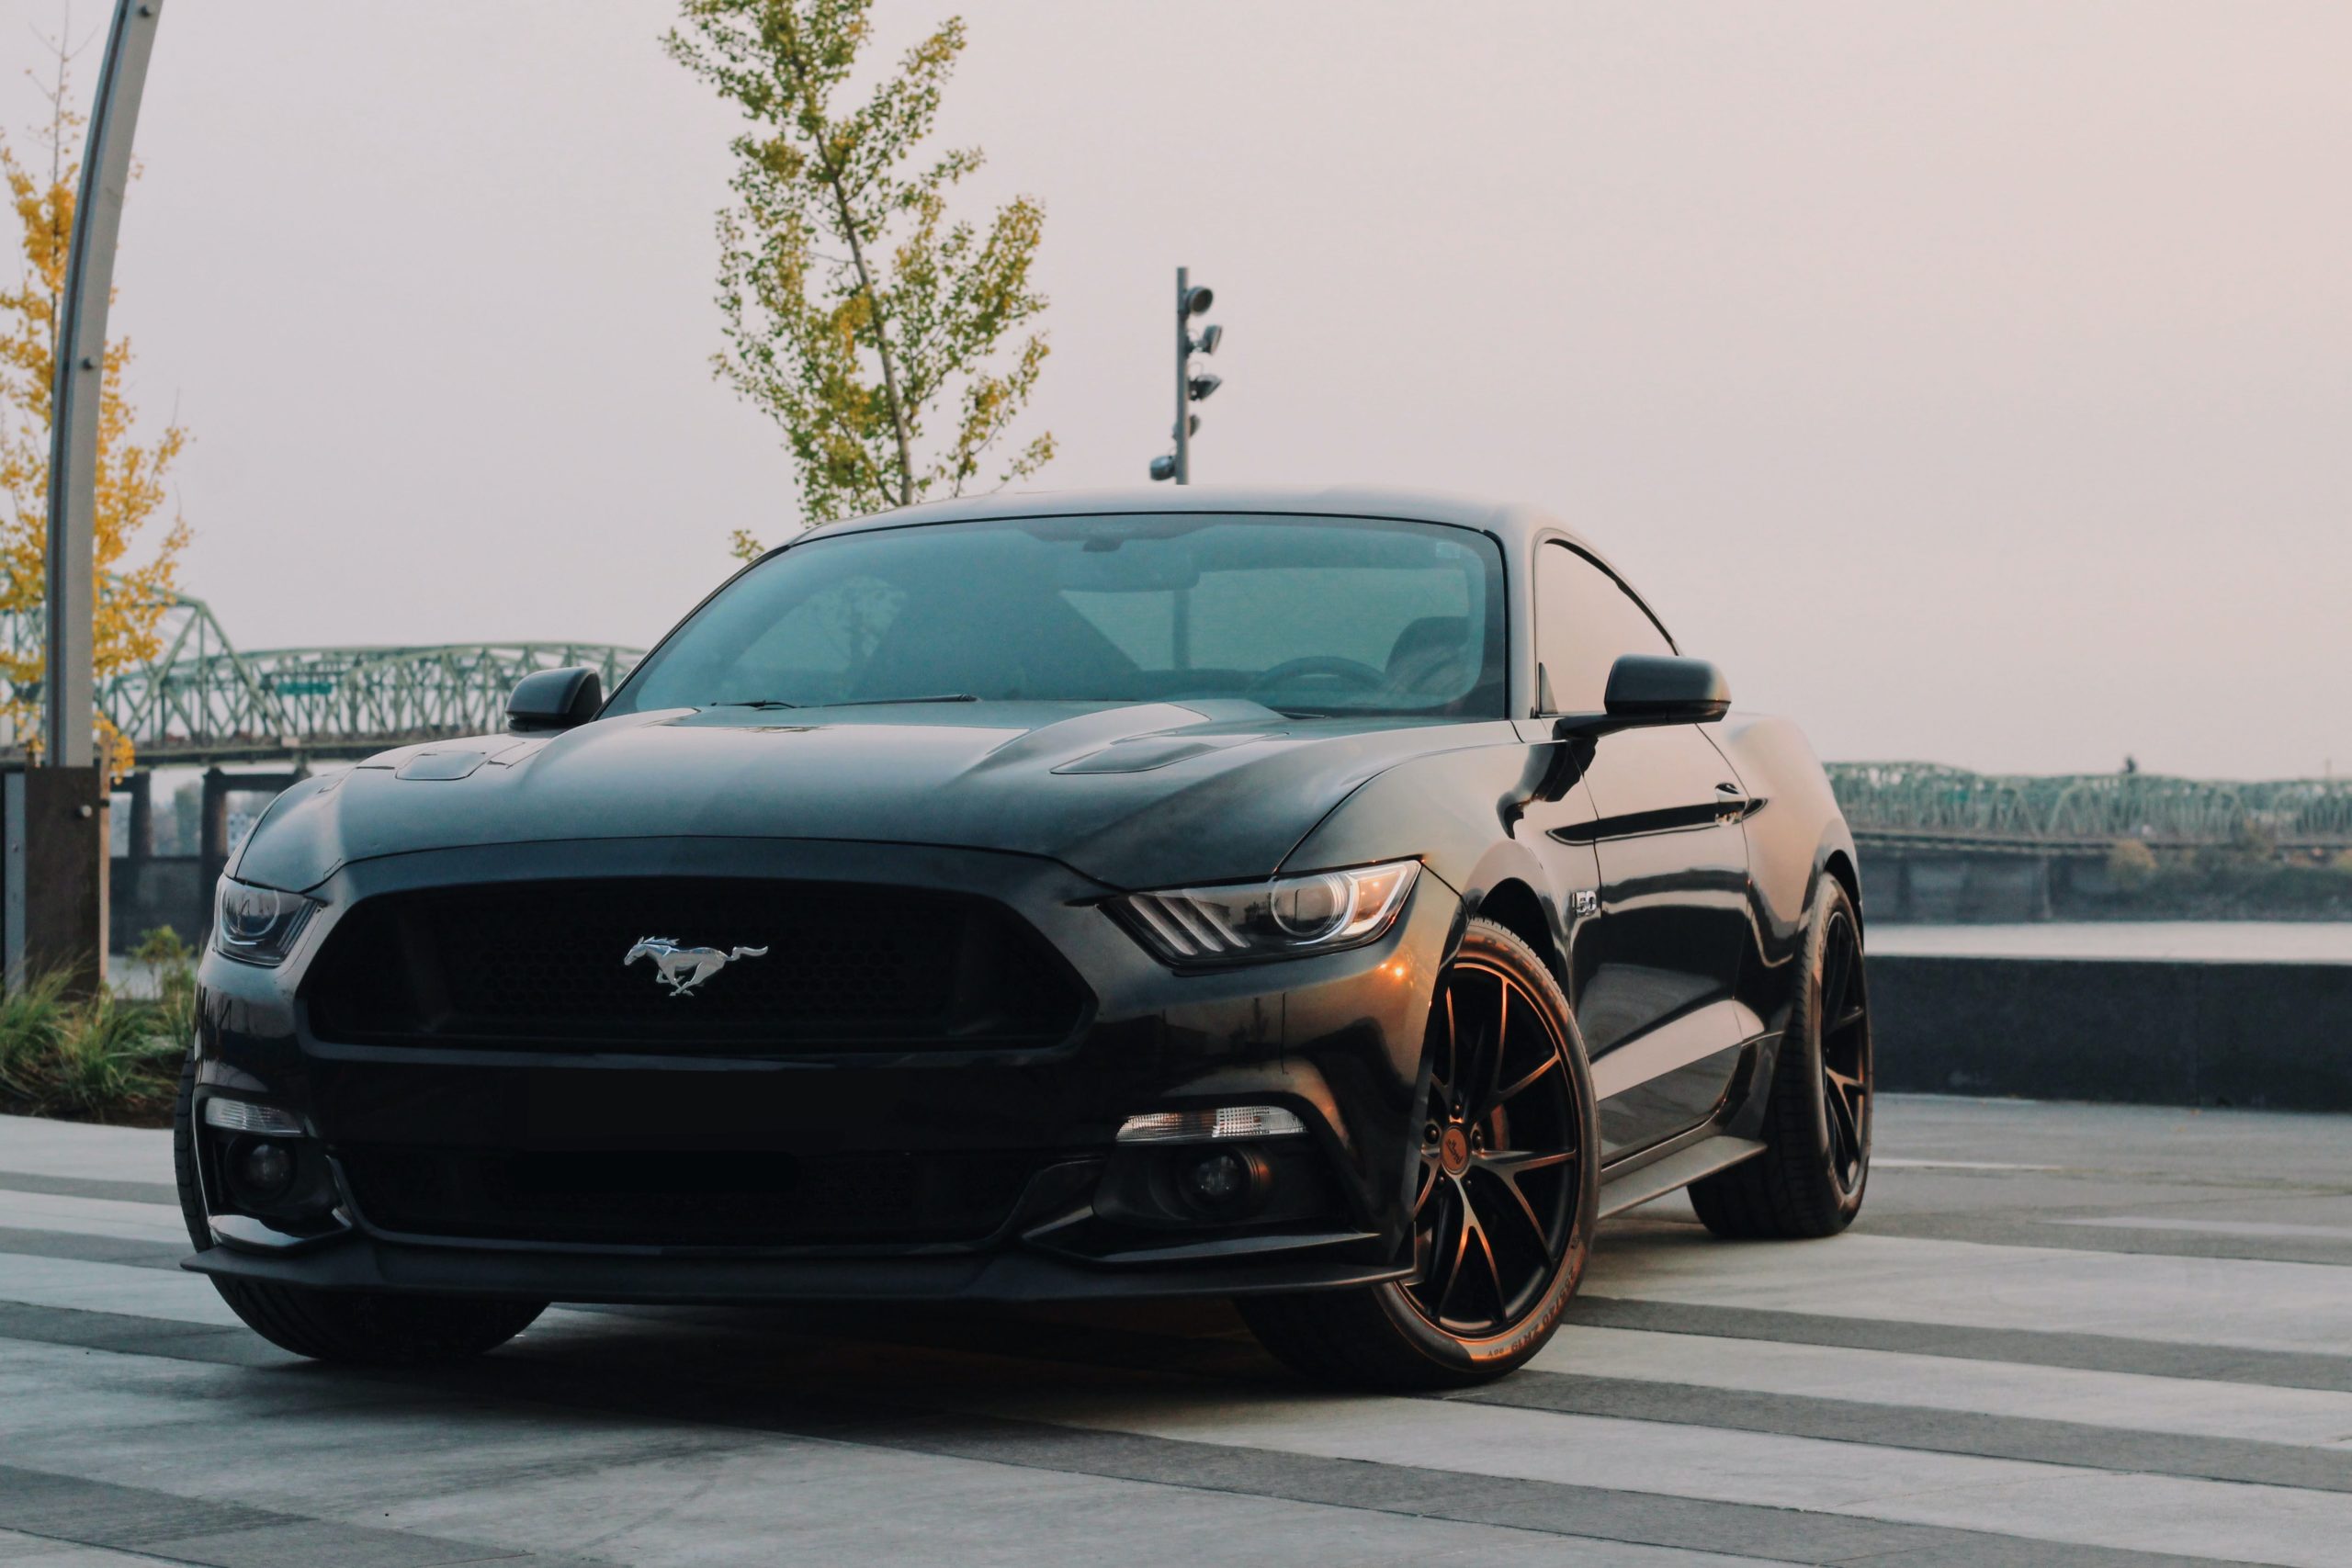 Ford Mustang voiture la plus vendue au monde